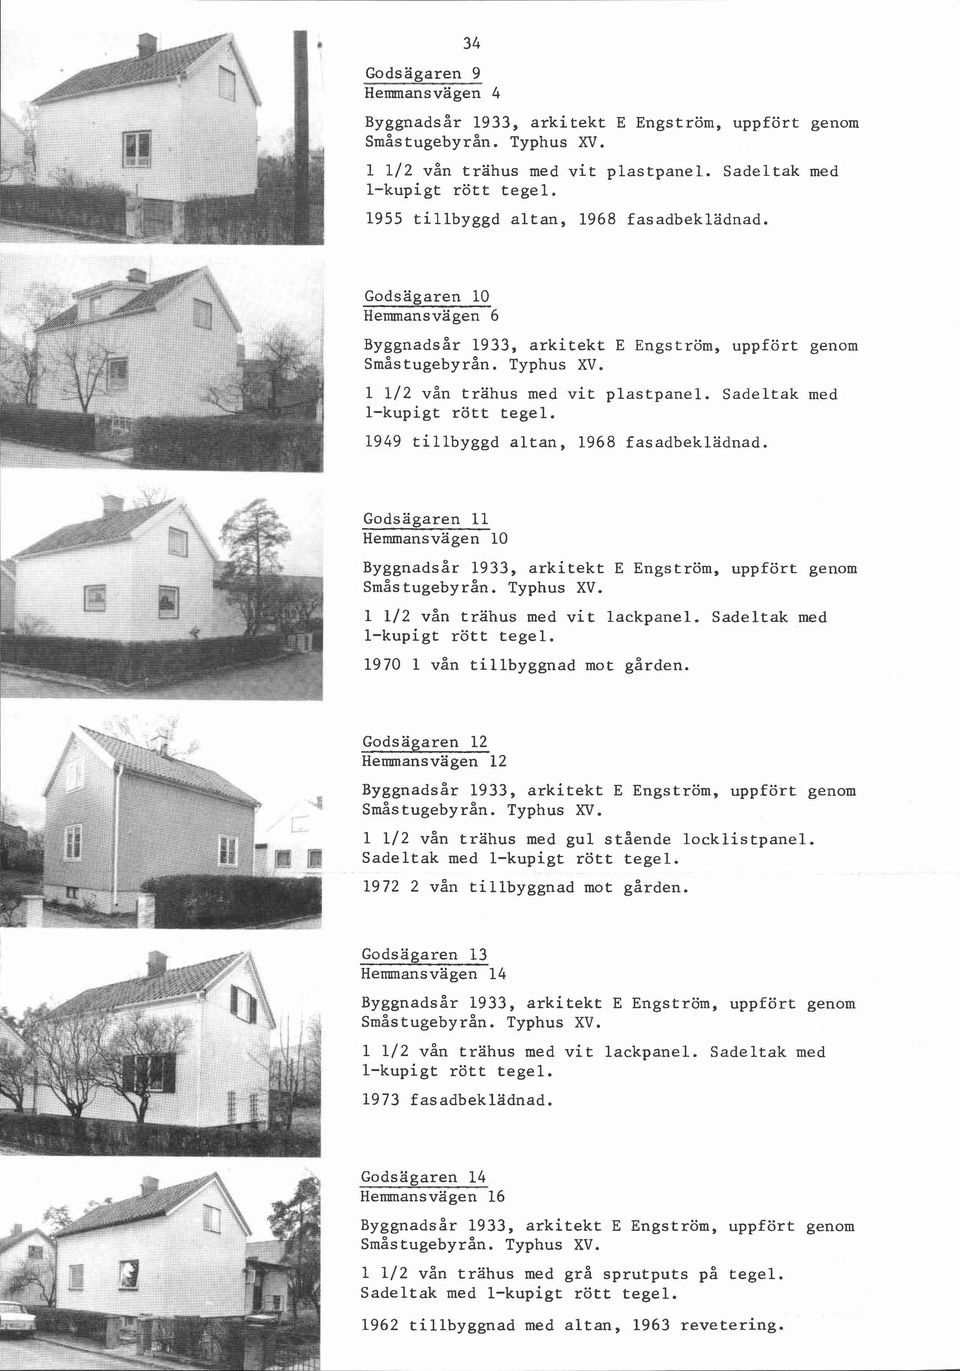 Godsägaren 11 Hemmansvägen 10 1 112 vån trahus med vit lackpanel. Sadeltak med 1970 1 vån tillbyggnad mot gården.